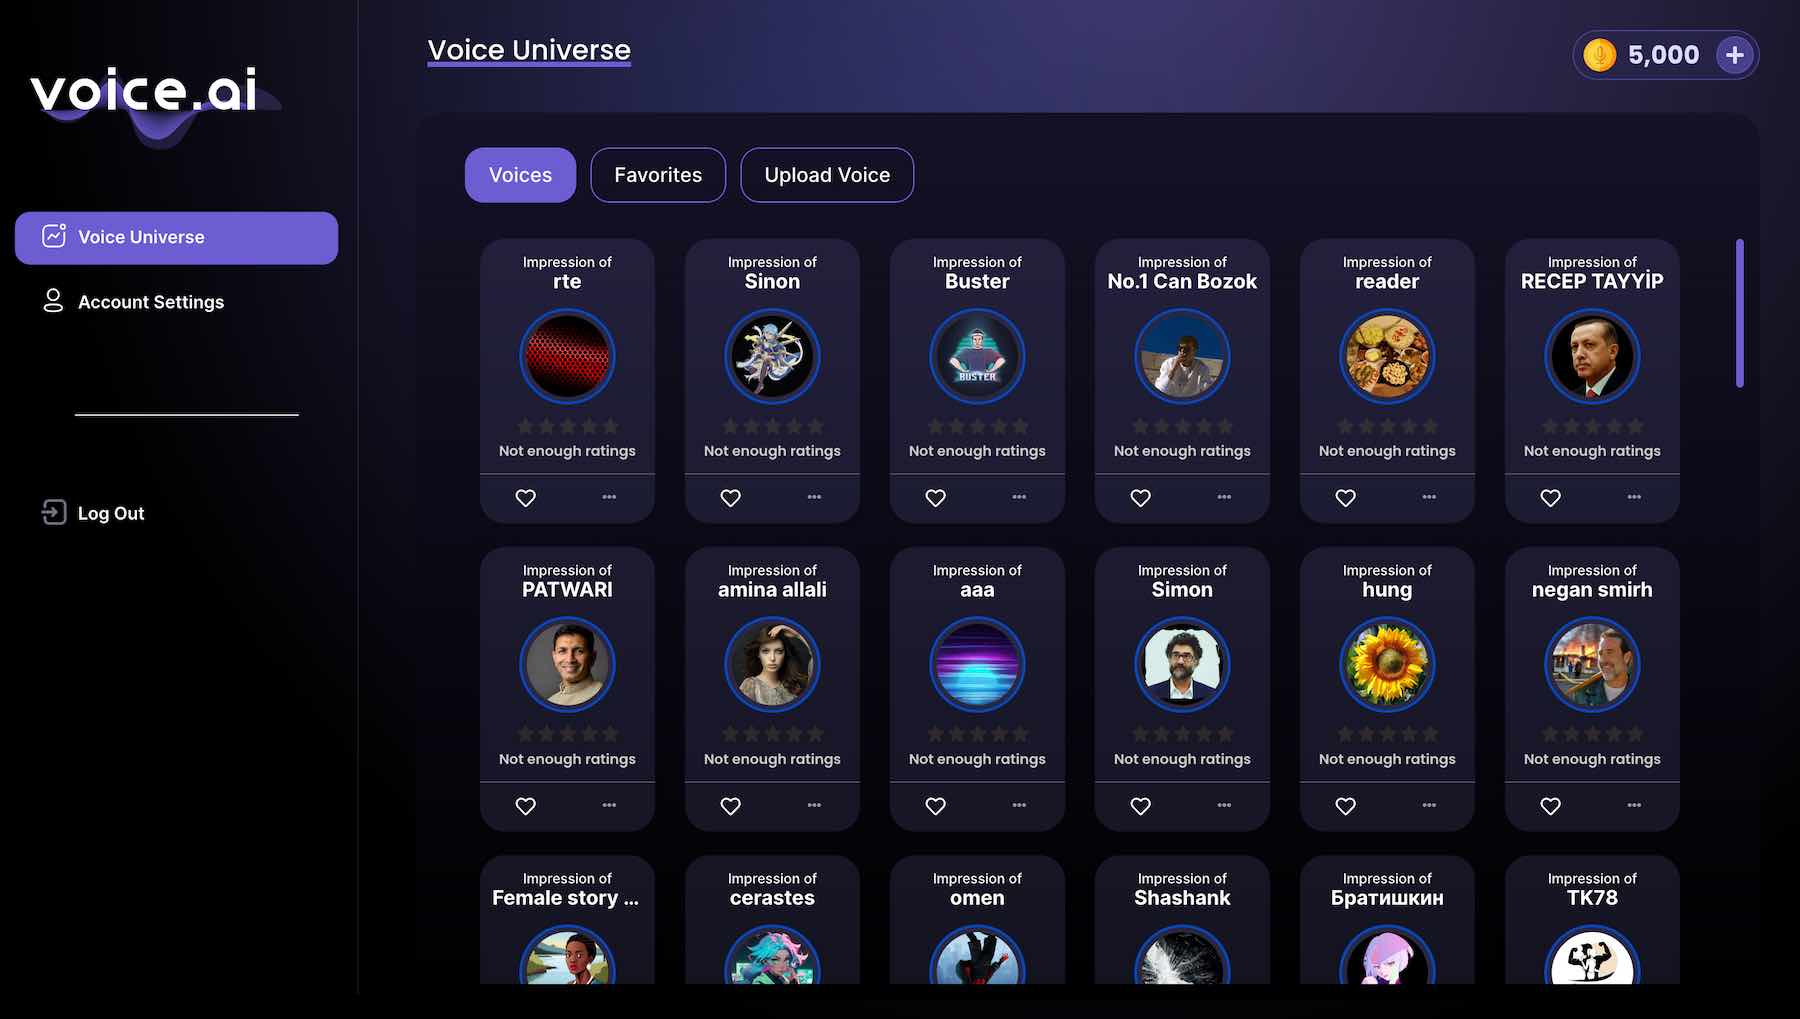 Voice.ai voice universe feature screenshot